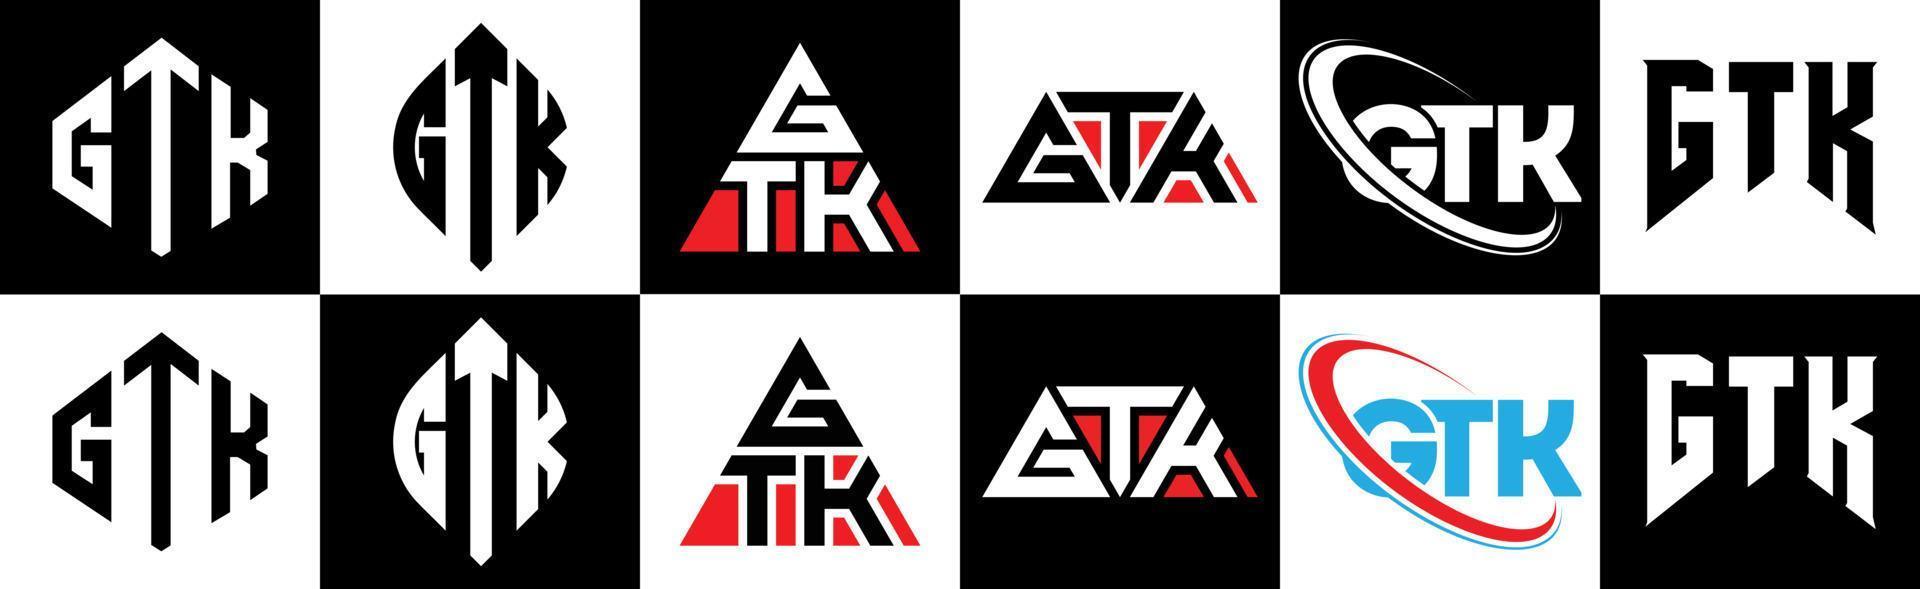 création de logo de lettre gtk en six styles. polygone gtk, cercle, triangle, hexagone, style plat et simple avec logo de lettre de variation de couleur noir et blanc dans un plan de travail. logo minimaliste et classique gtk vecteur